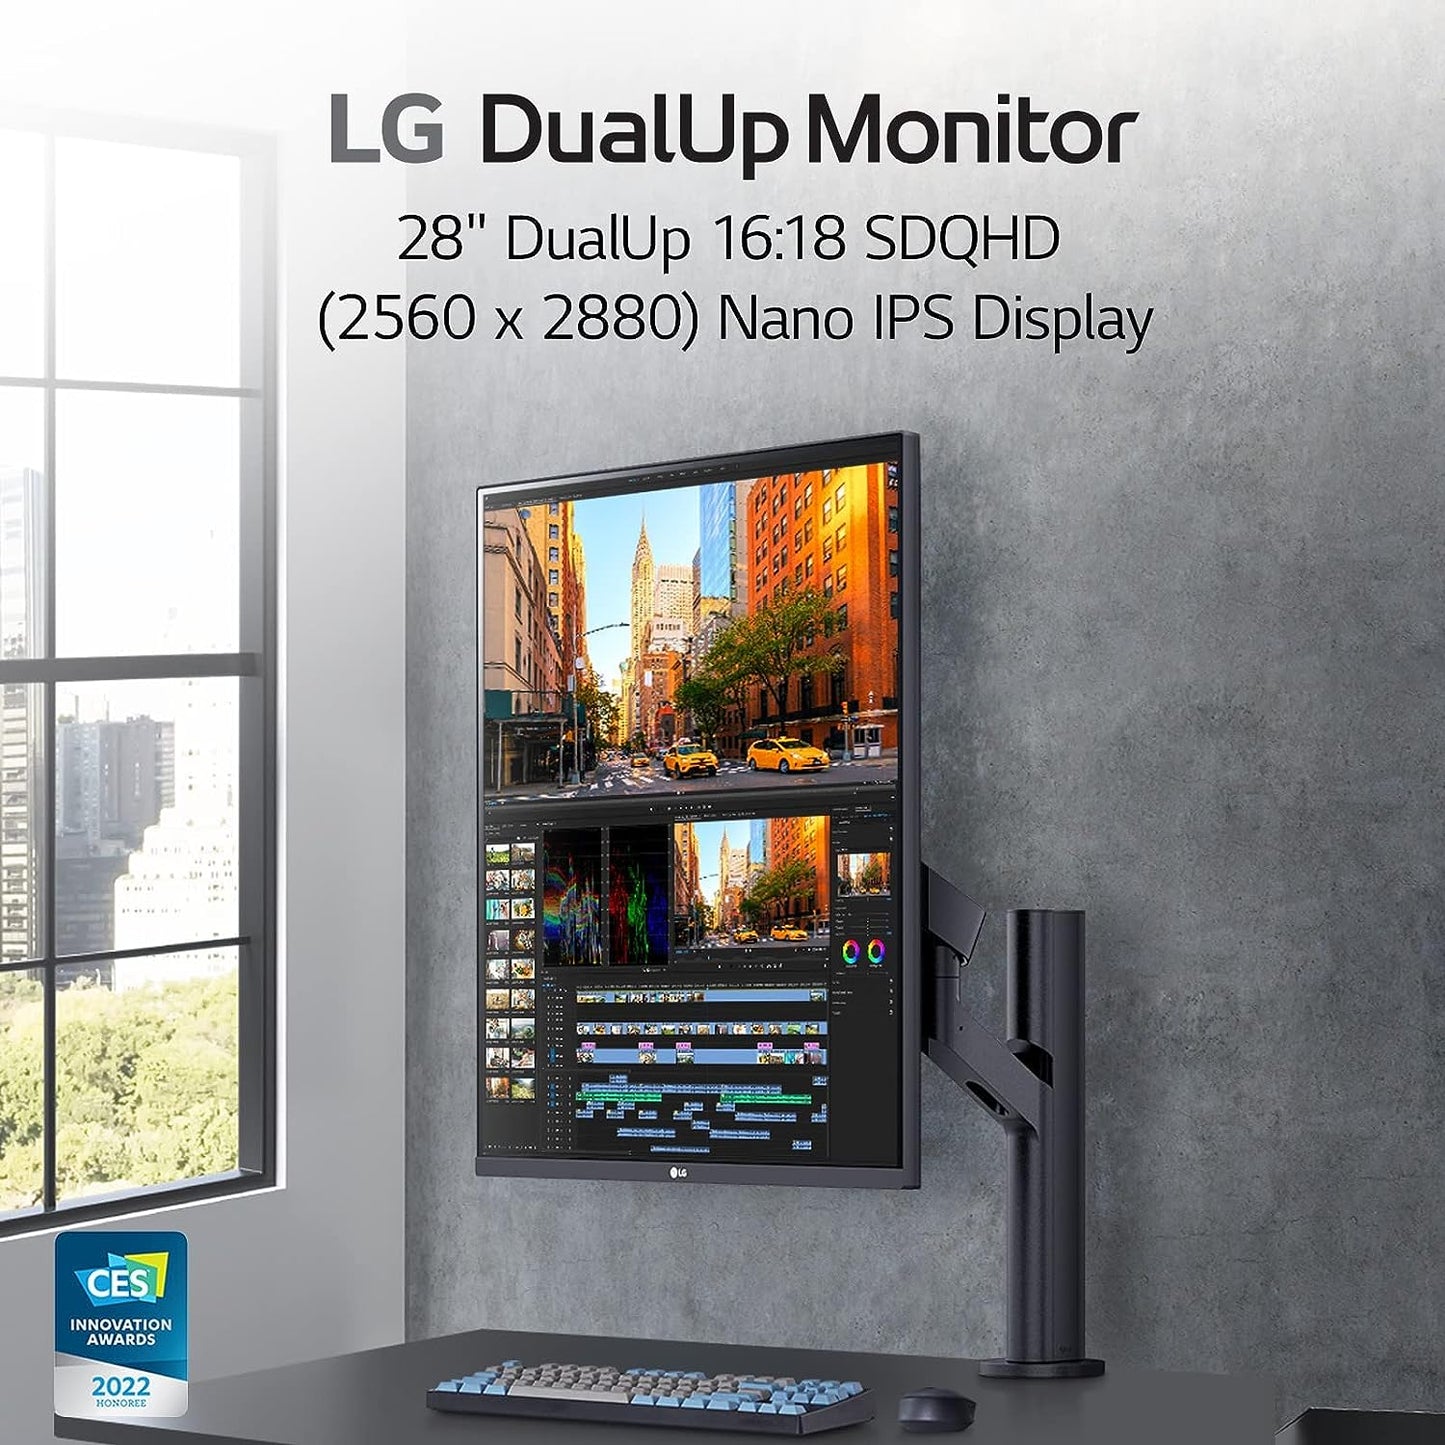 LG Dual Up Monitor